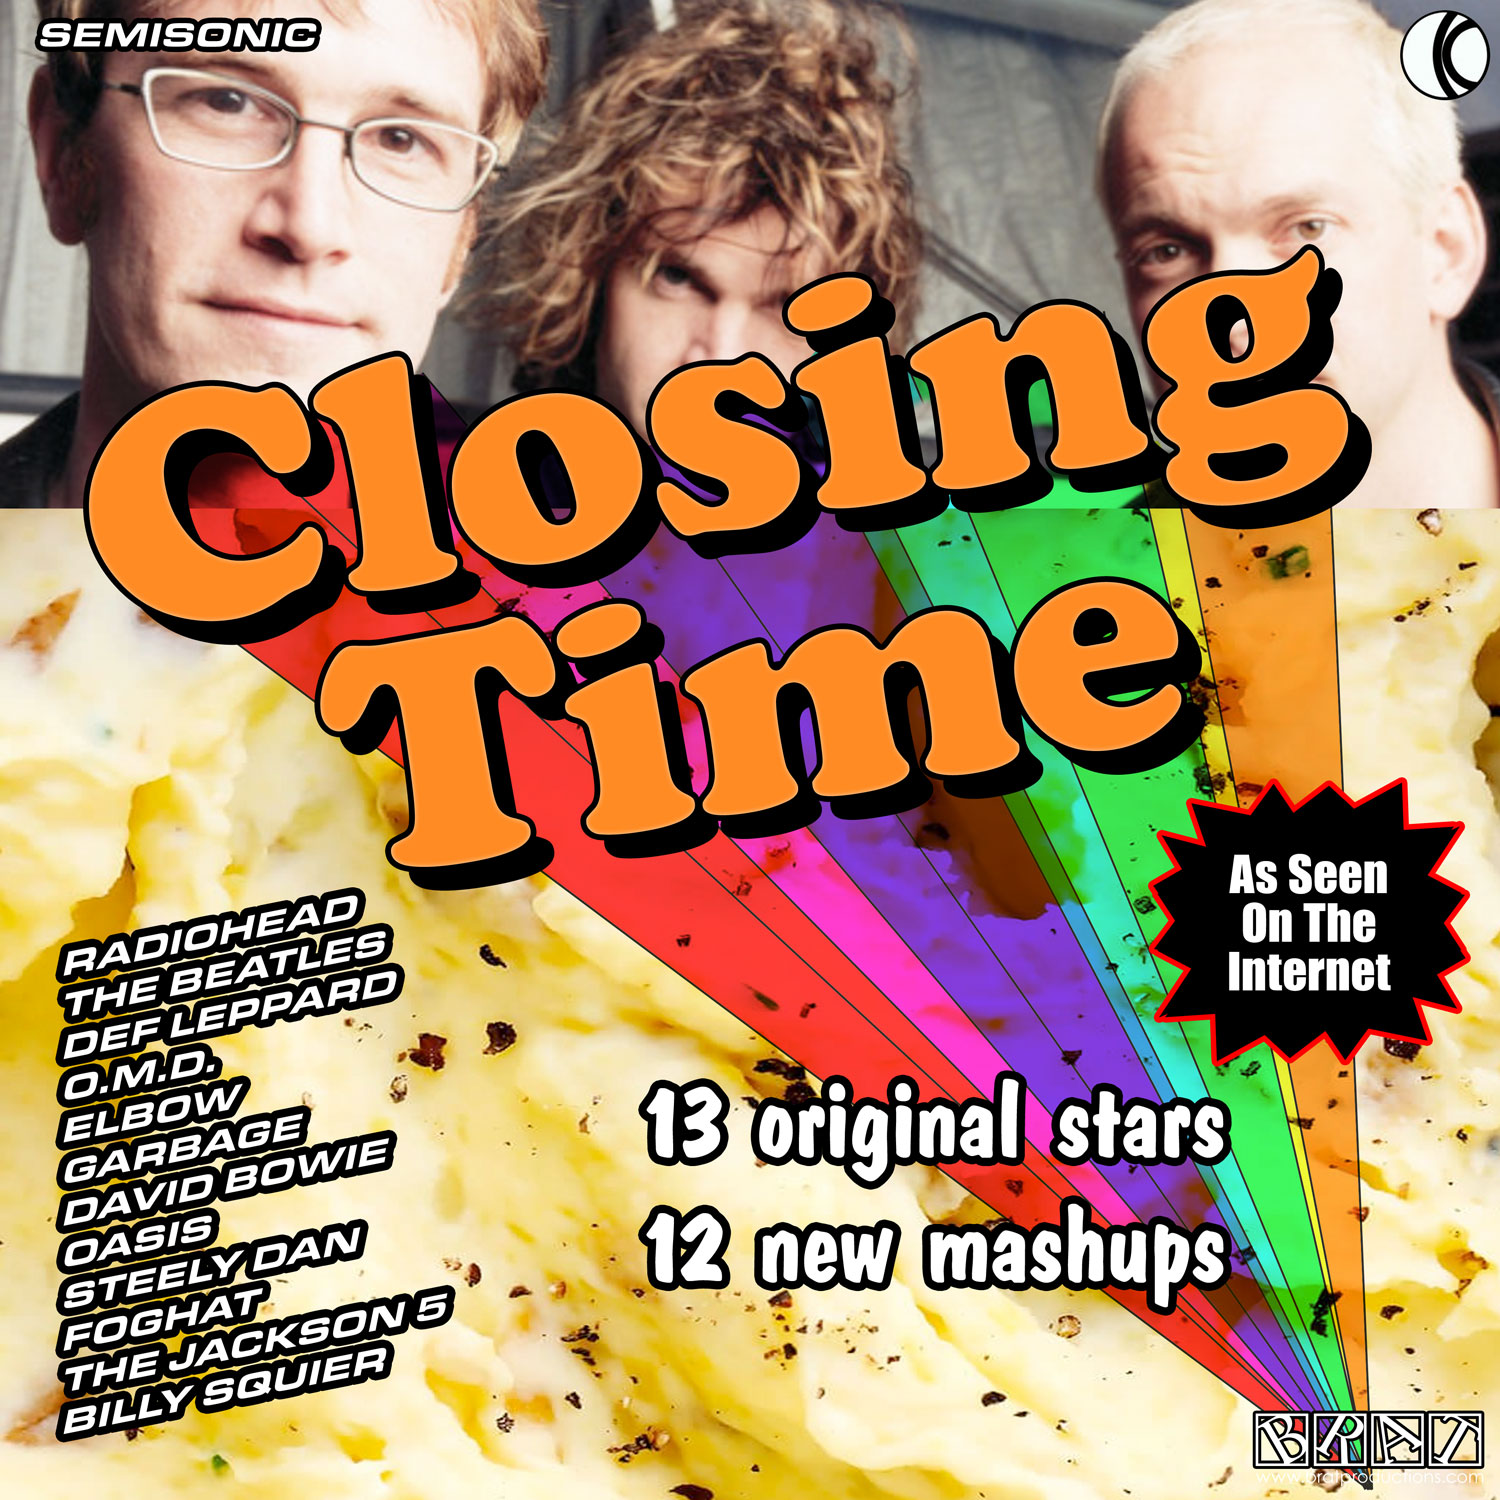 closing time: the album